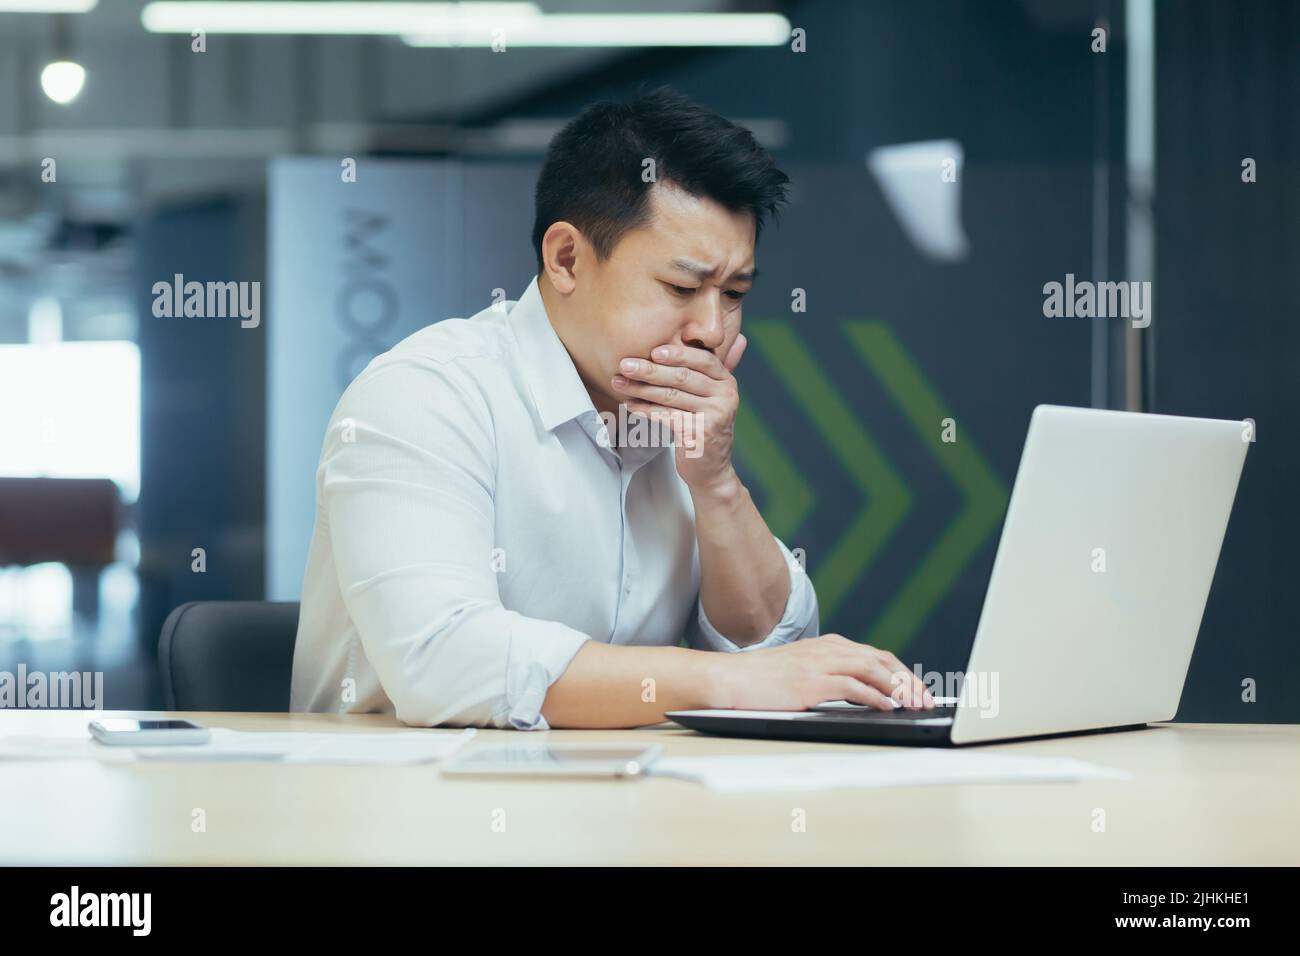 Kranker Mann bei der Arbeit, asiatischer Mann, der durch schlechtes Mittagessen vergiftet wird, Geschäftsmann, der mit einem Laptop im modernen Büro arbeitet Stockfoto